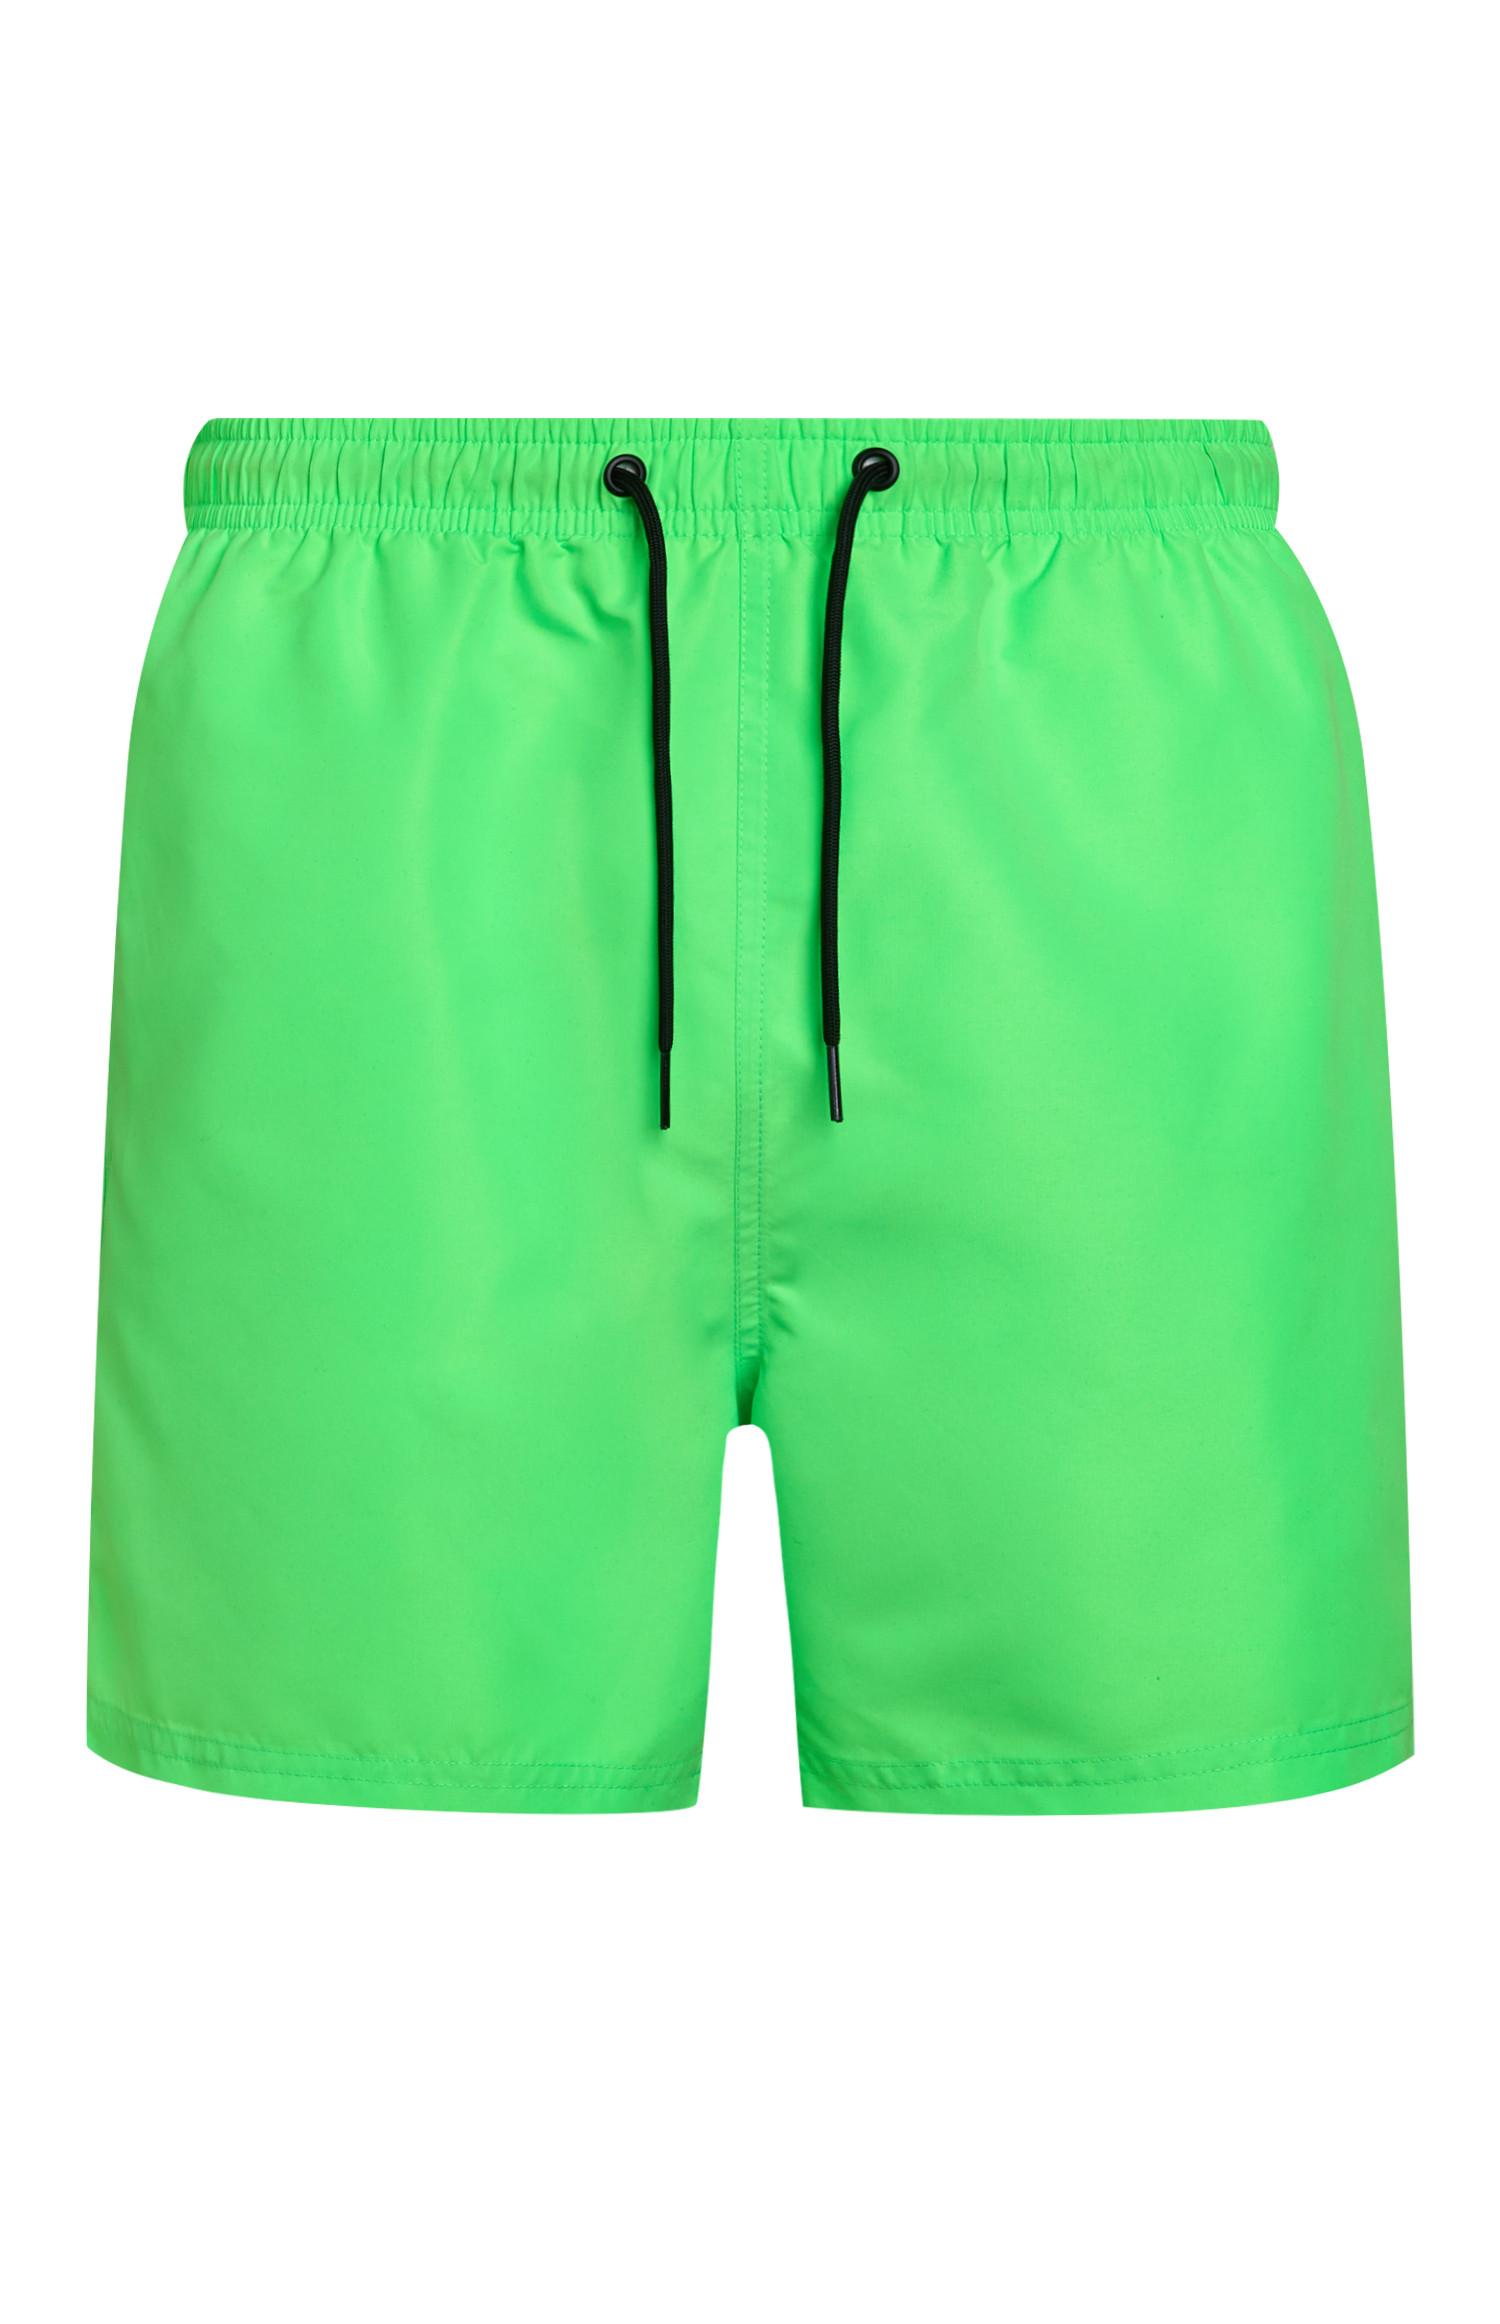 mens neon green swim trunks